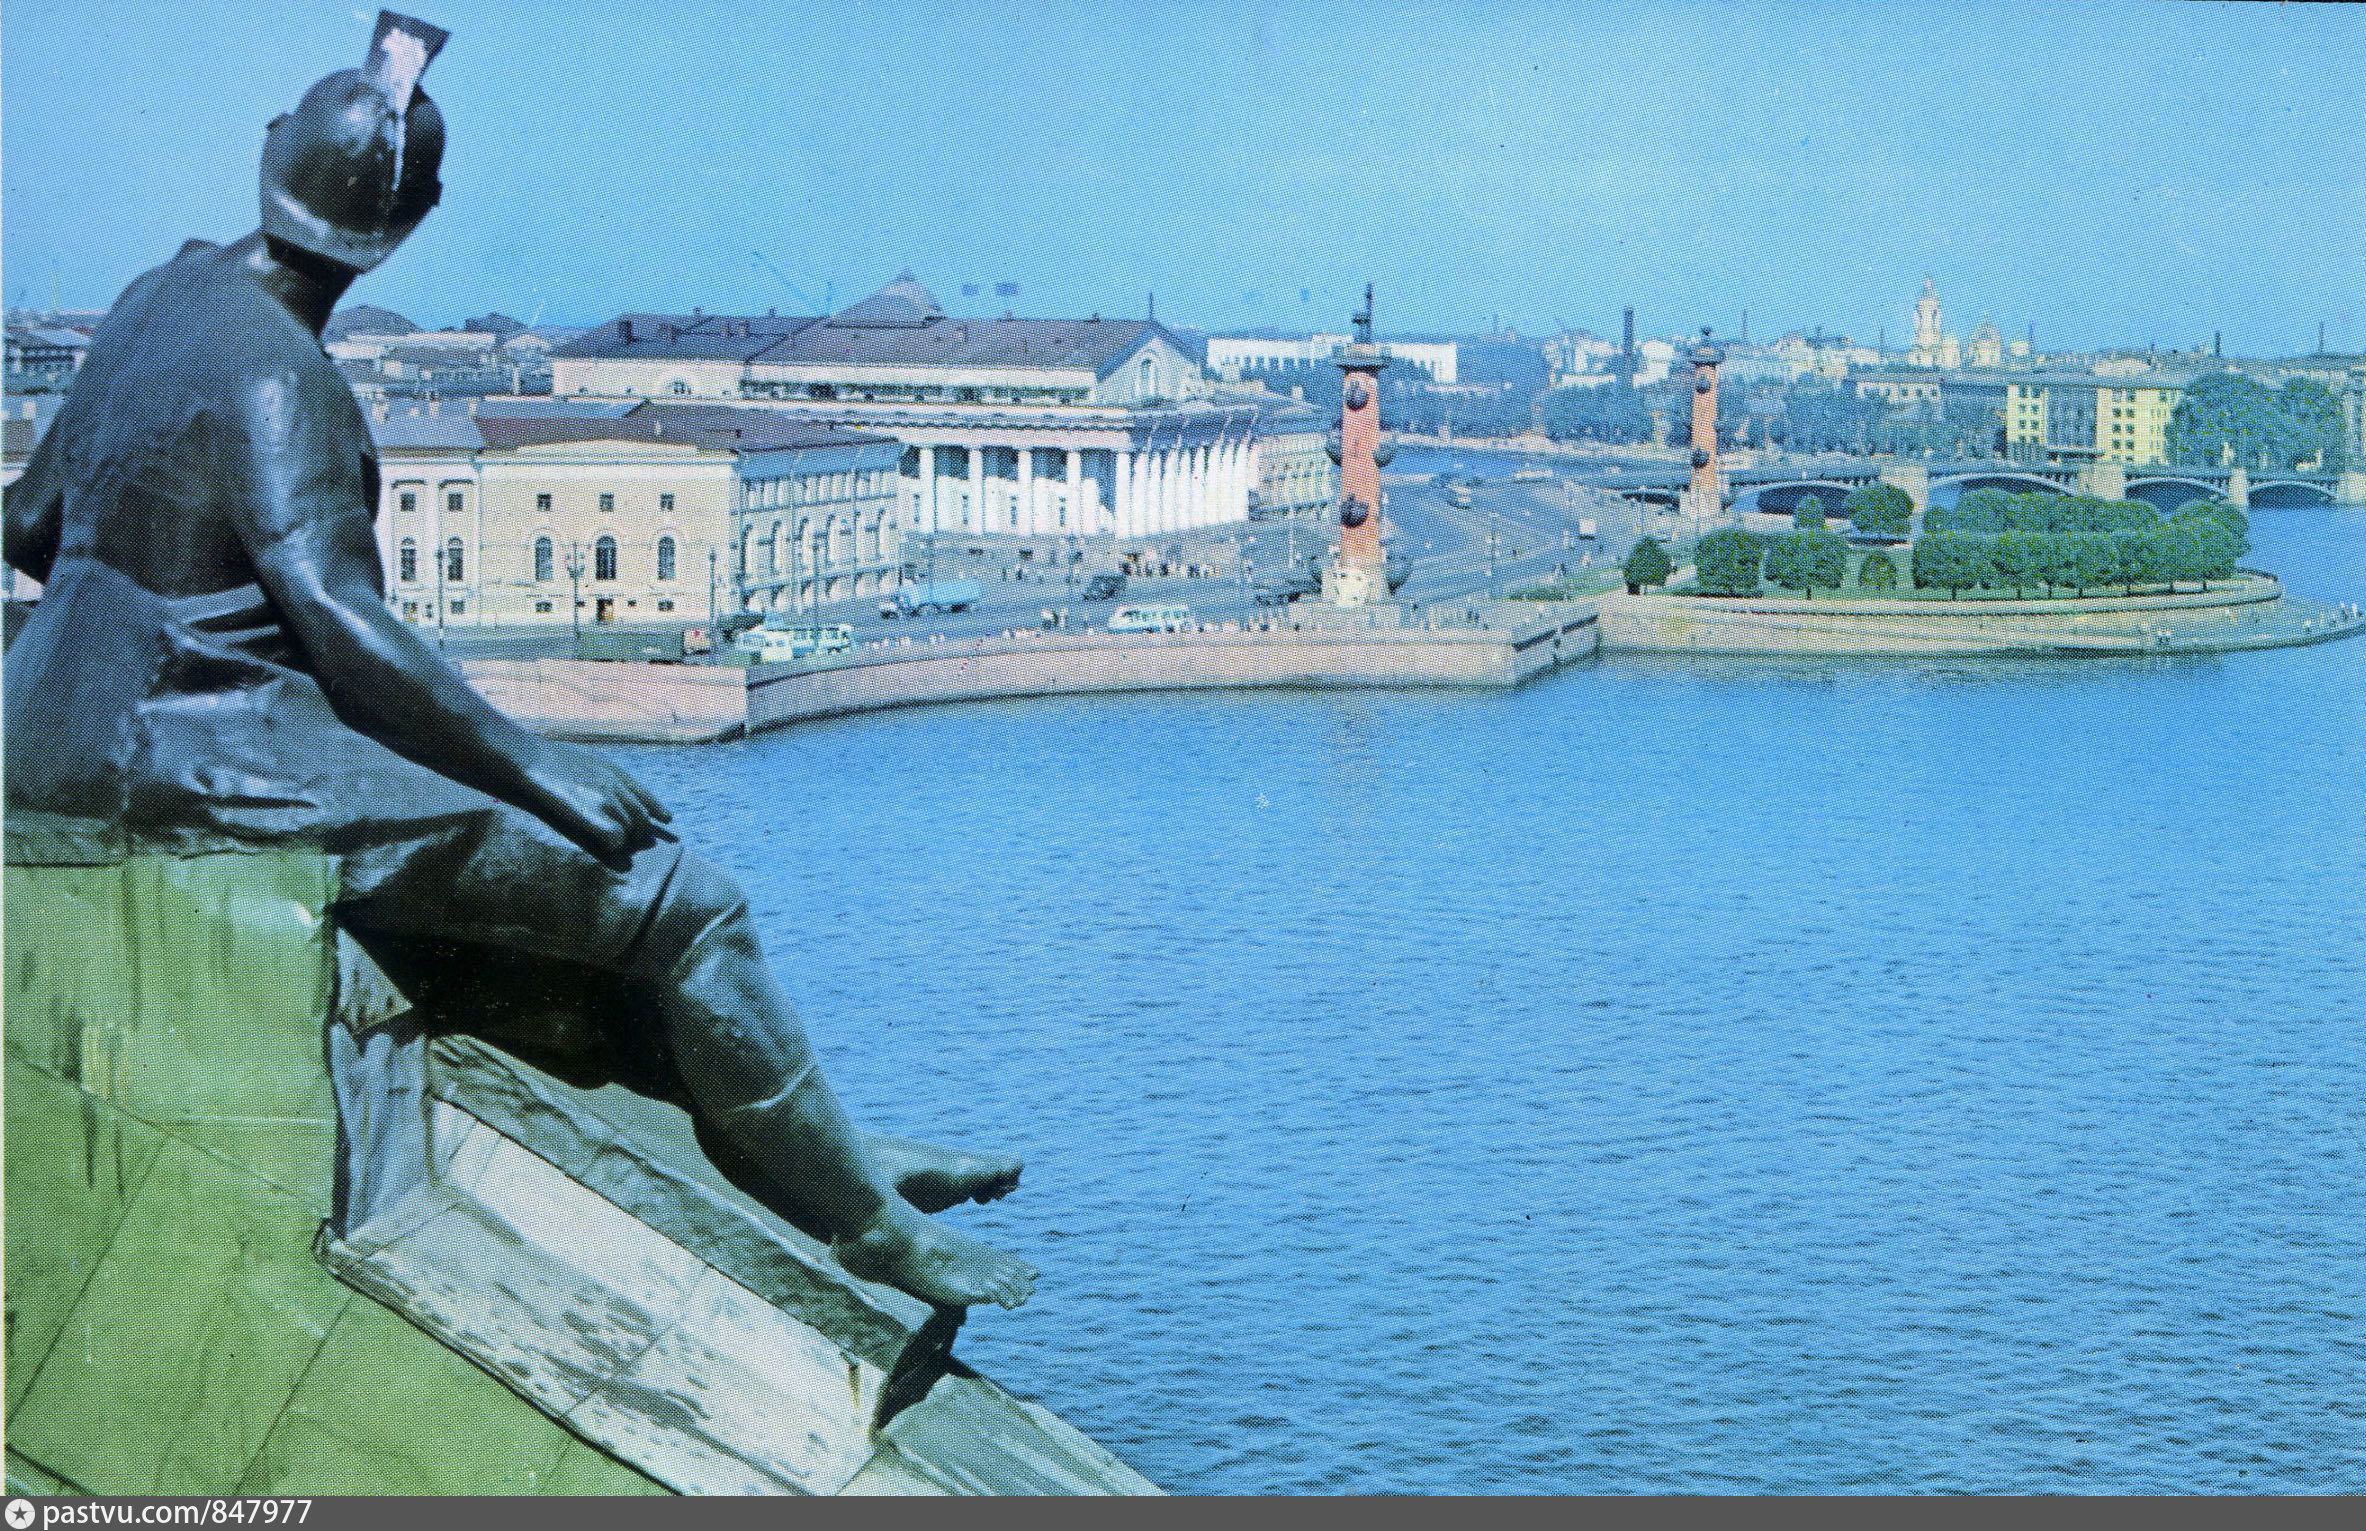 Ленинградский экспресс санкт петербург васильевского острова